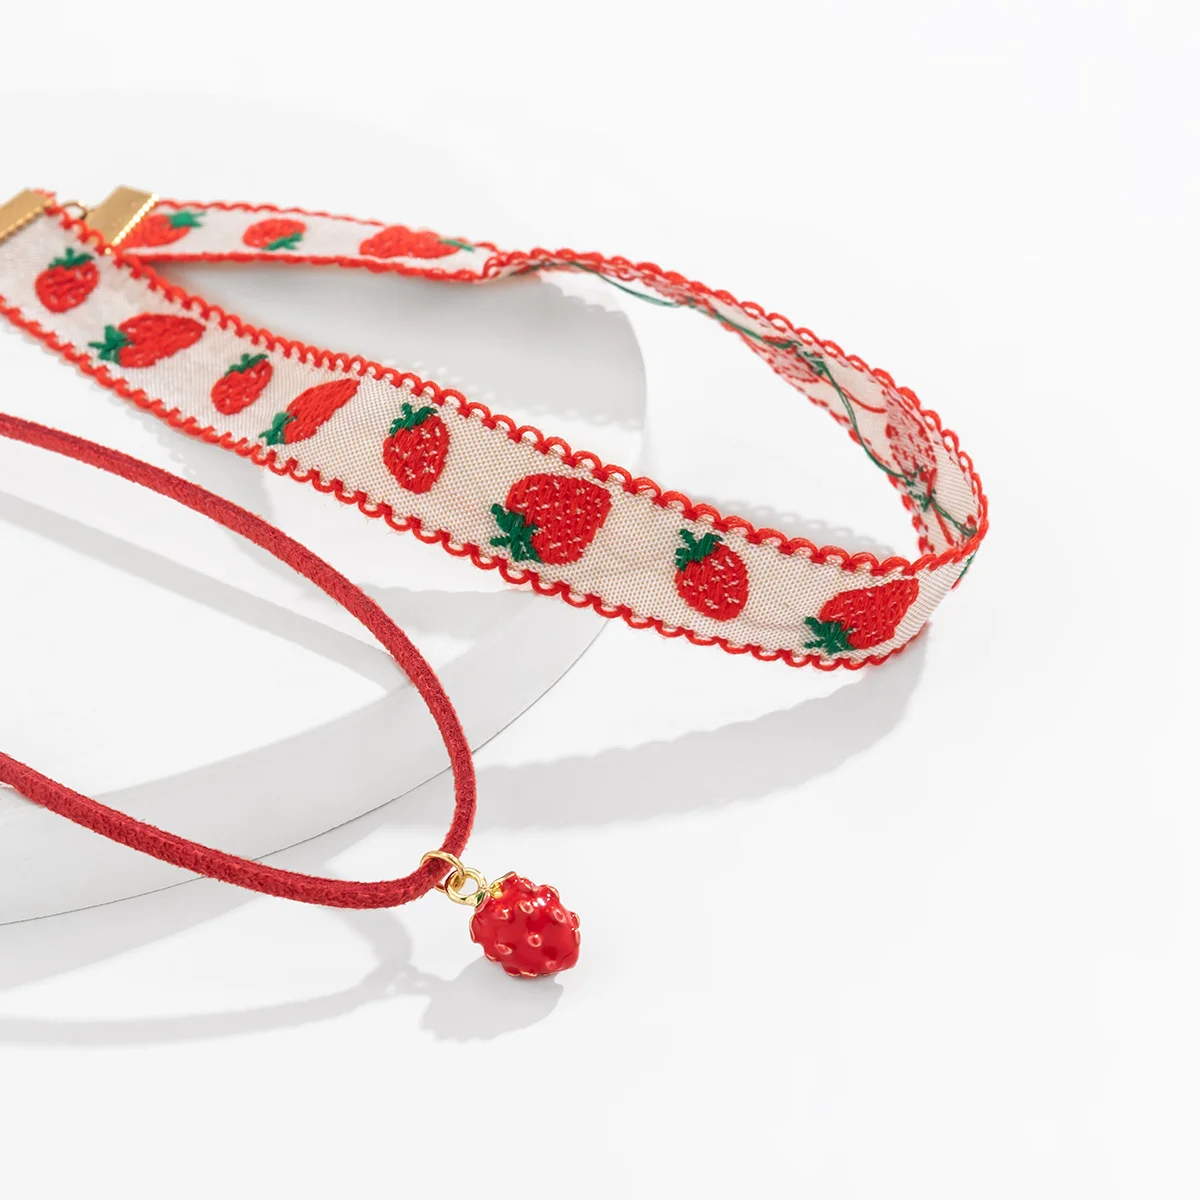 Strawberry Layered Choker Necklace Set